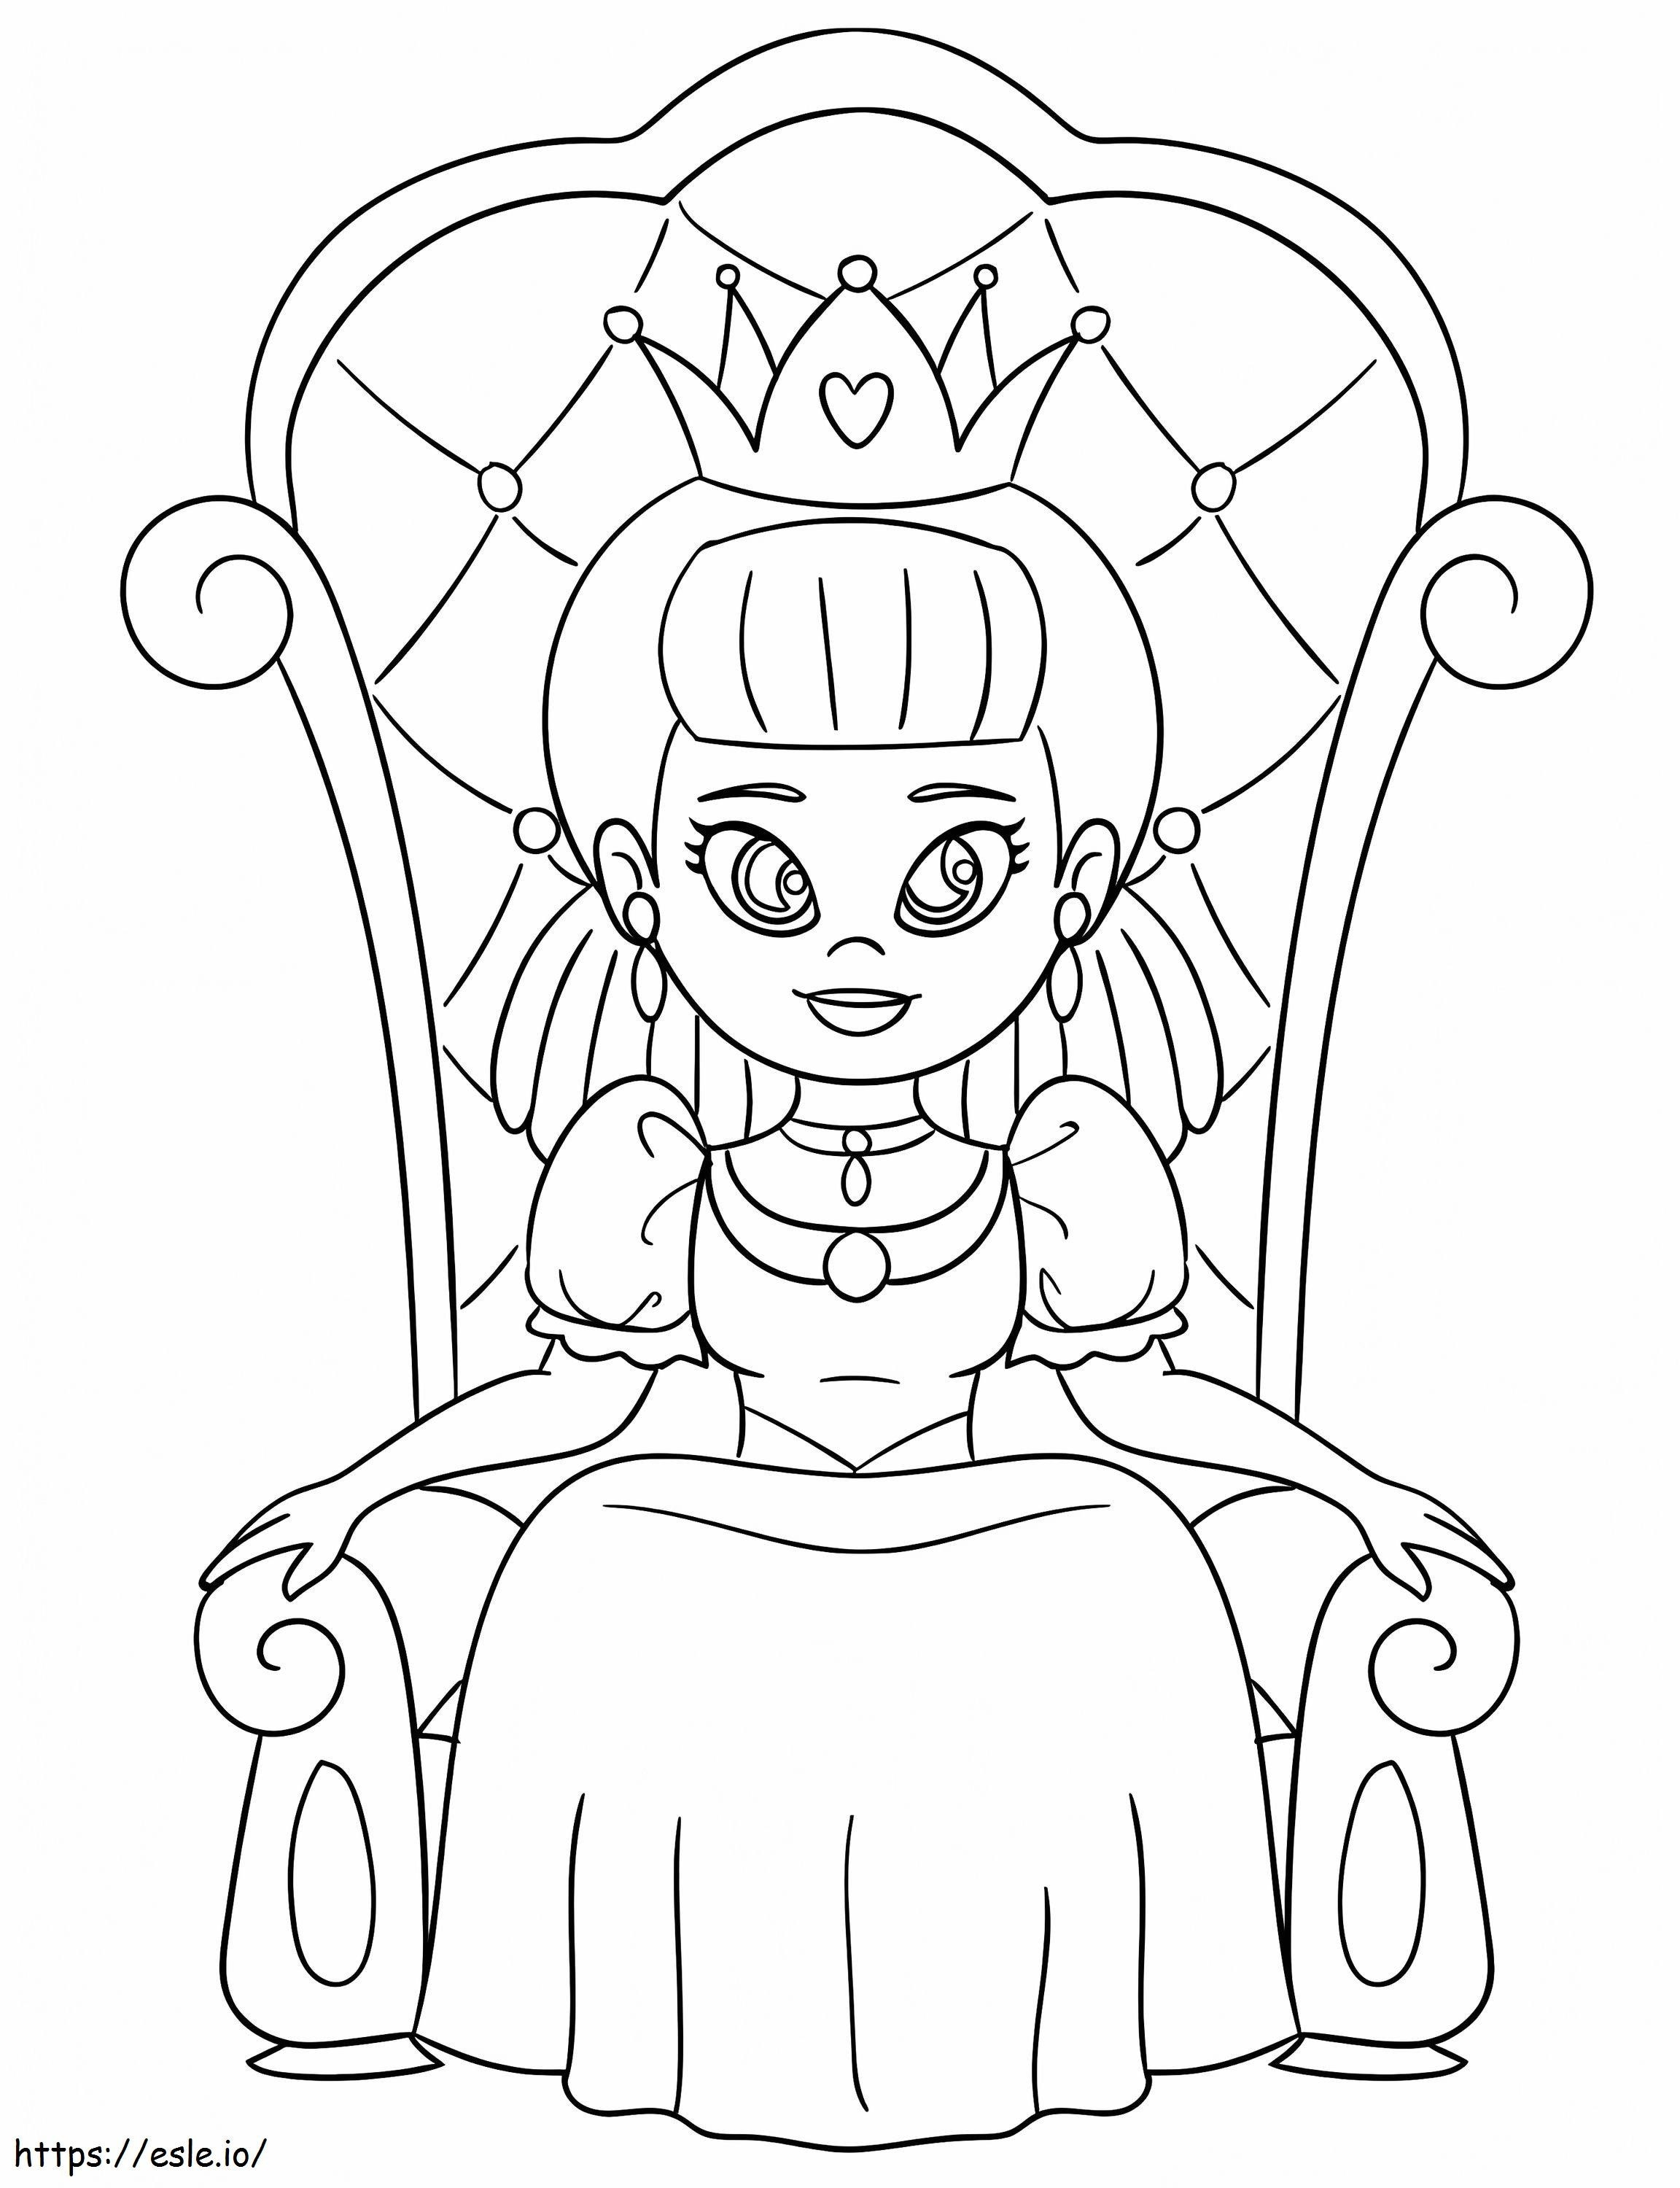 Regina pe tron de colorat